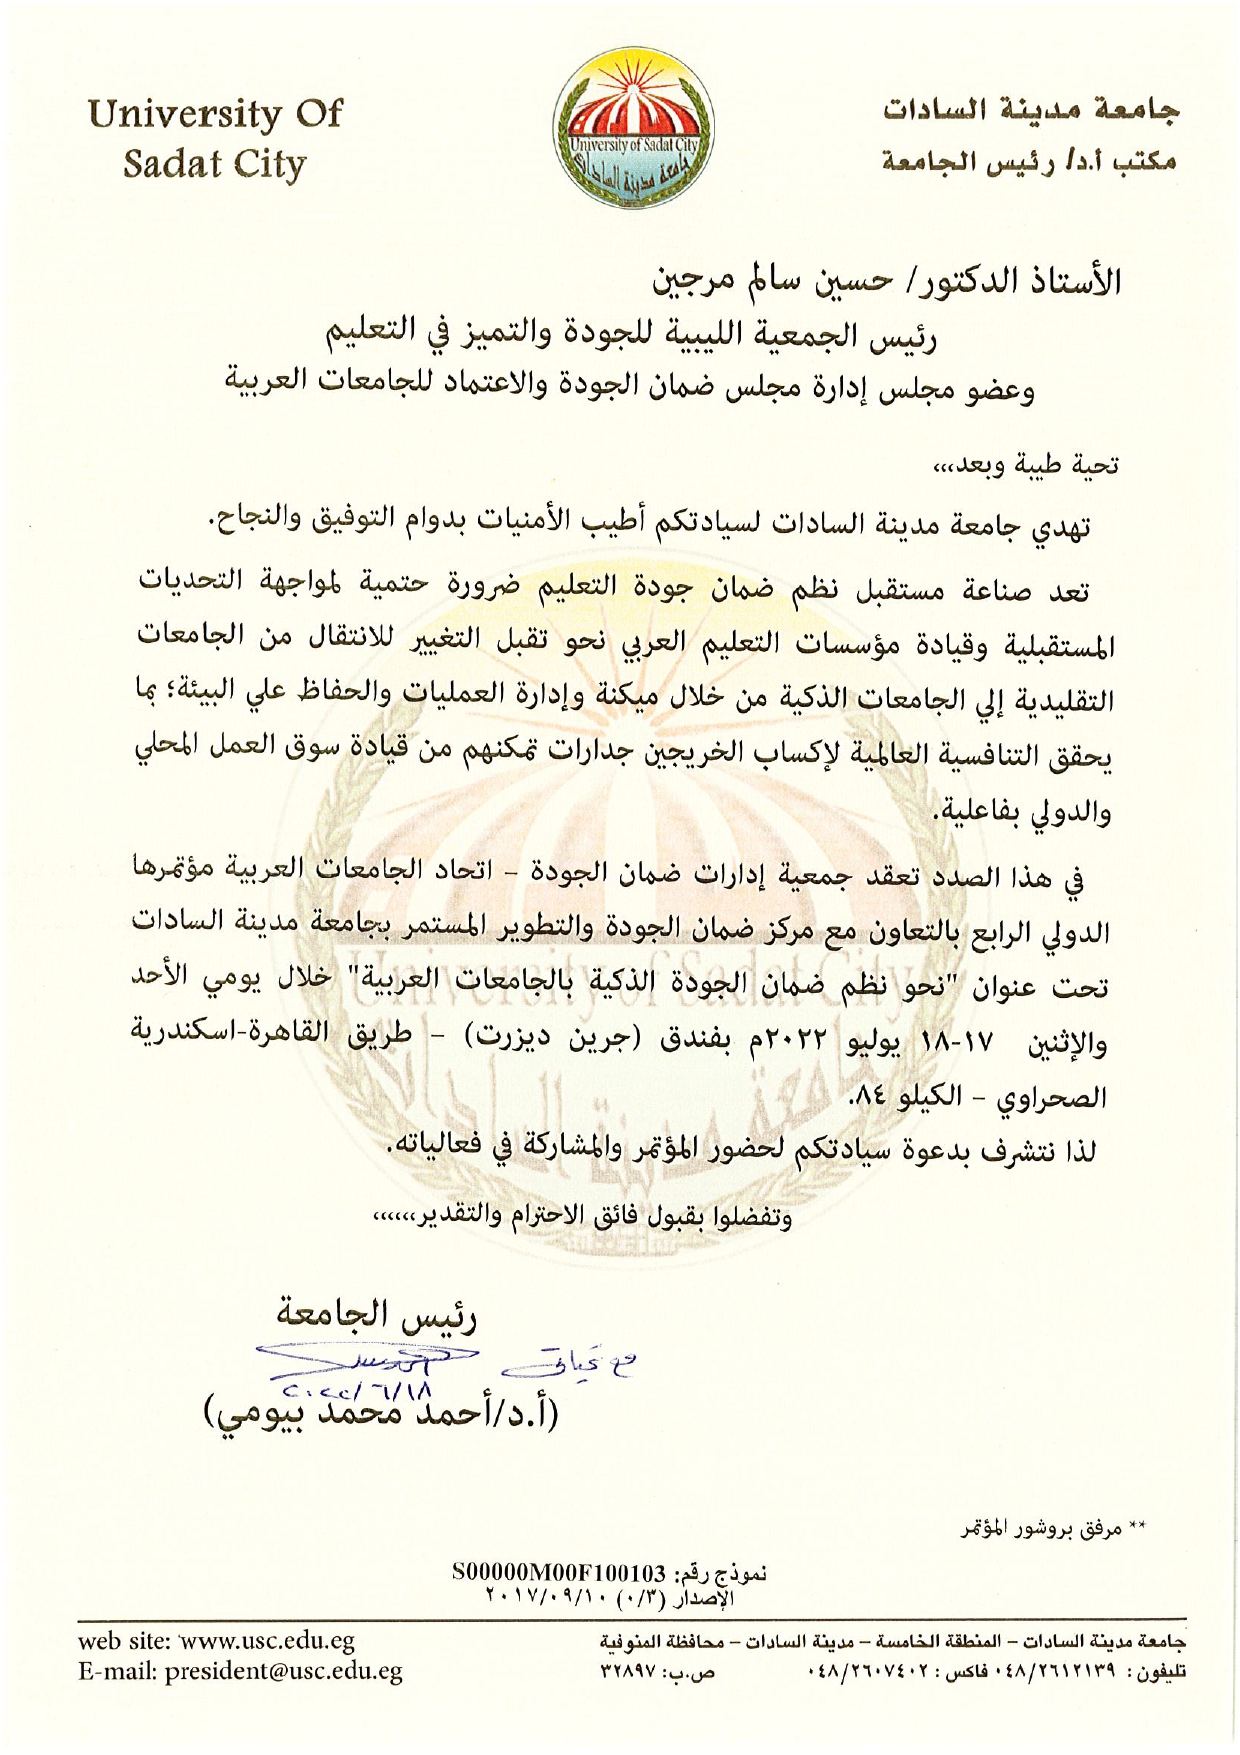 المشاركة في فعاليات جمعية إدارات ضمان الجودة في اتحاد الجامعات العربية